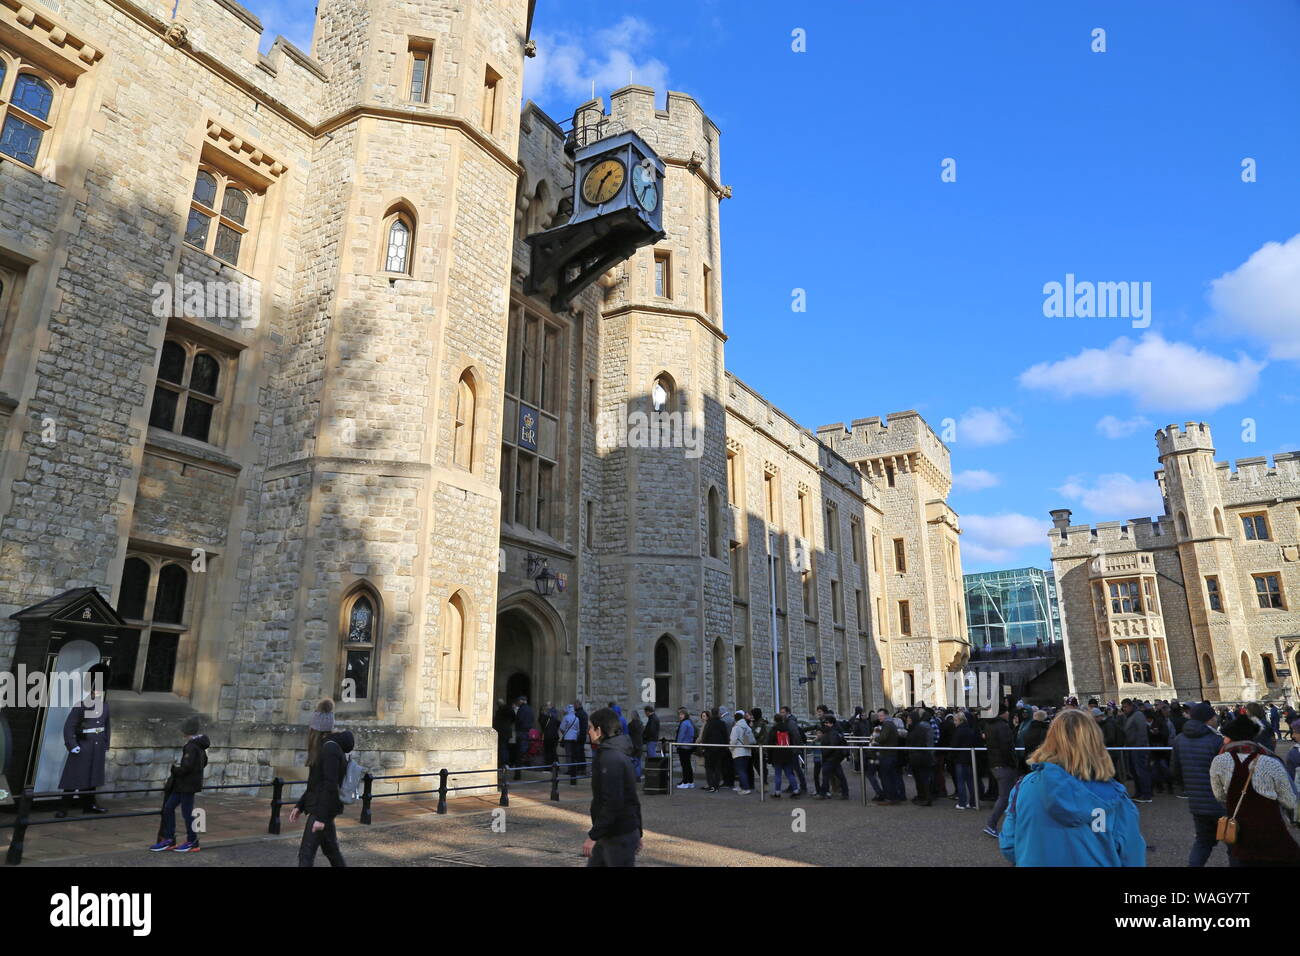 La messa in coda per vedere i gioielli della Corona, blocco di Waterloo, interno Ward, Torre di Londra City di Londra, Inghilterra, Gran Bretagna, Regno Unito, Gran Bretagna, Europa Foto Stock